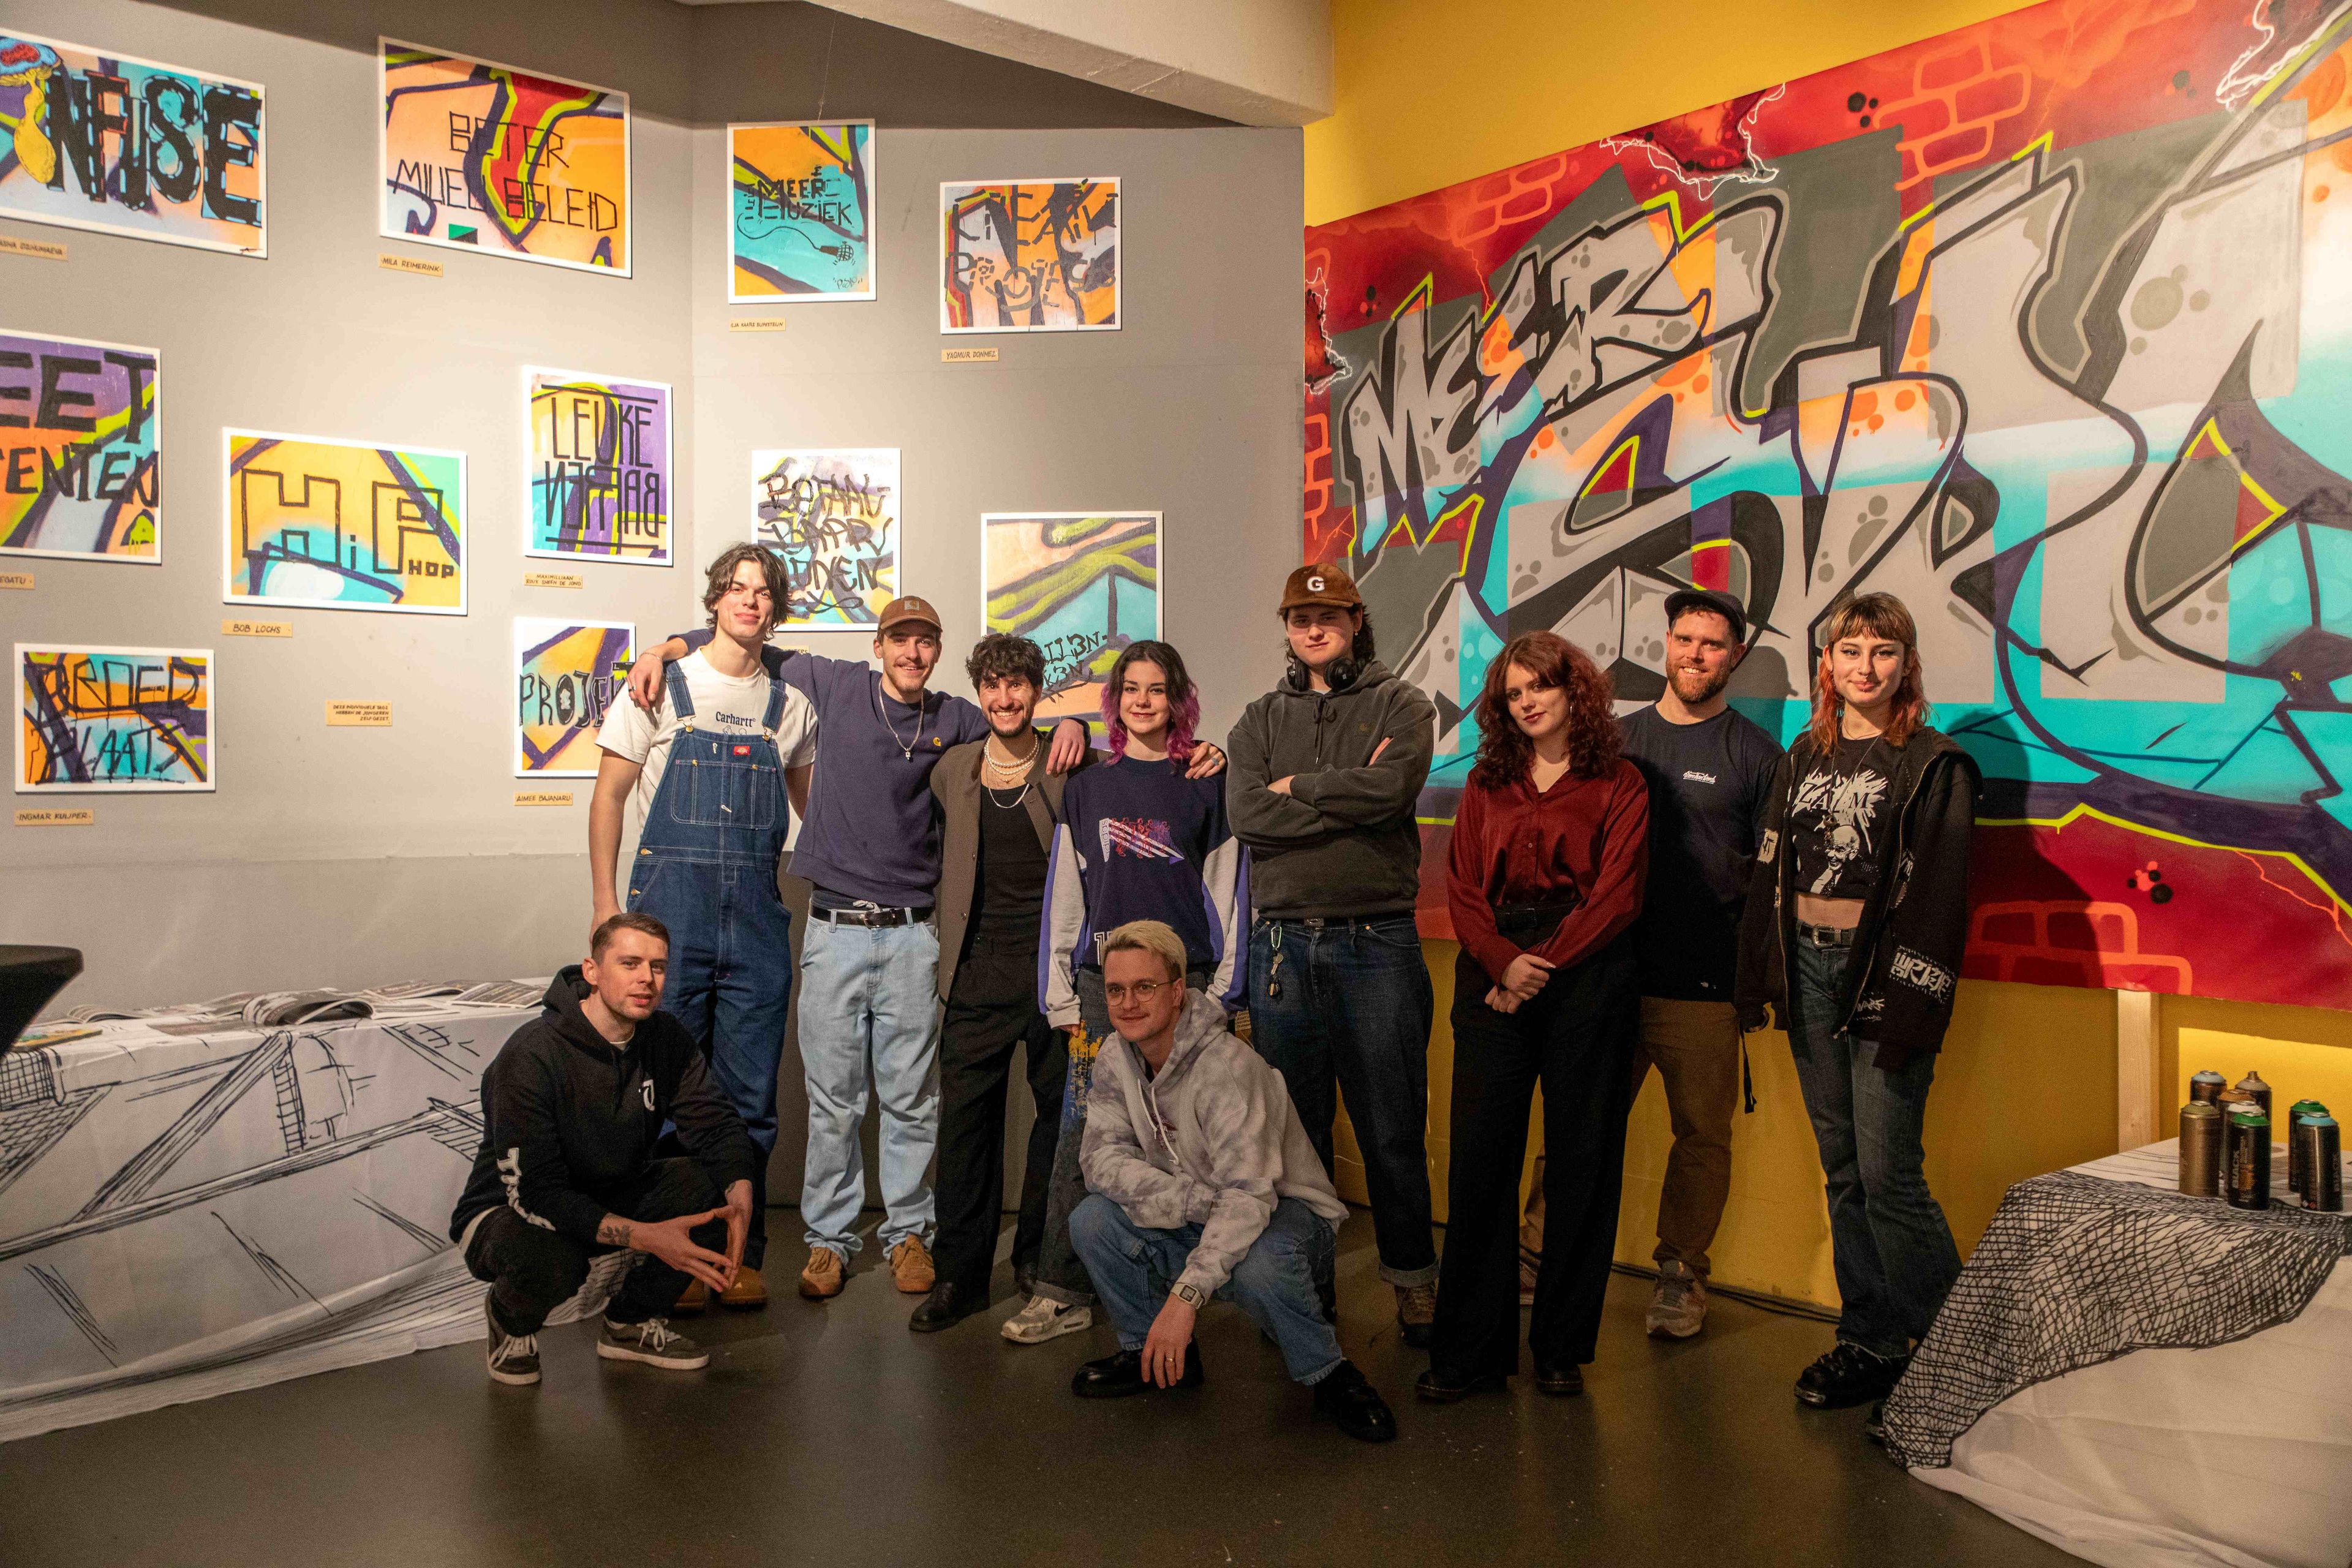 Groepsfoto van de jongeren die mee hebben gedaan aan de tentoonstelling ON THE SPOT - Paik van Schagen